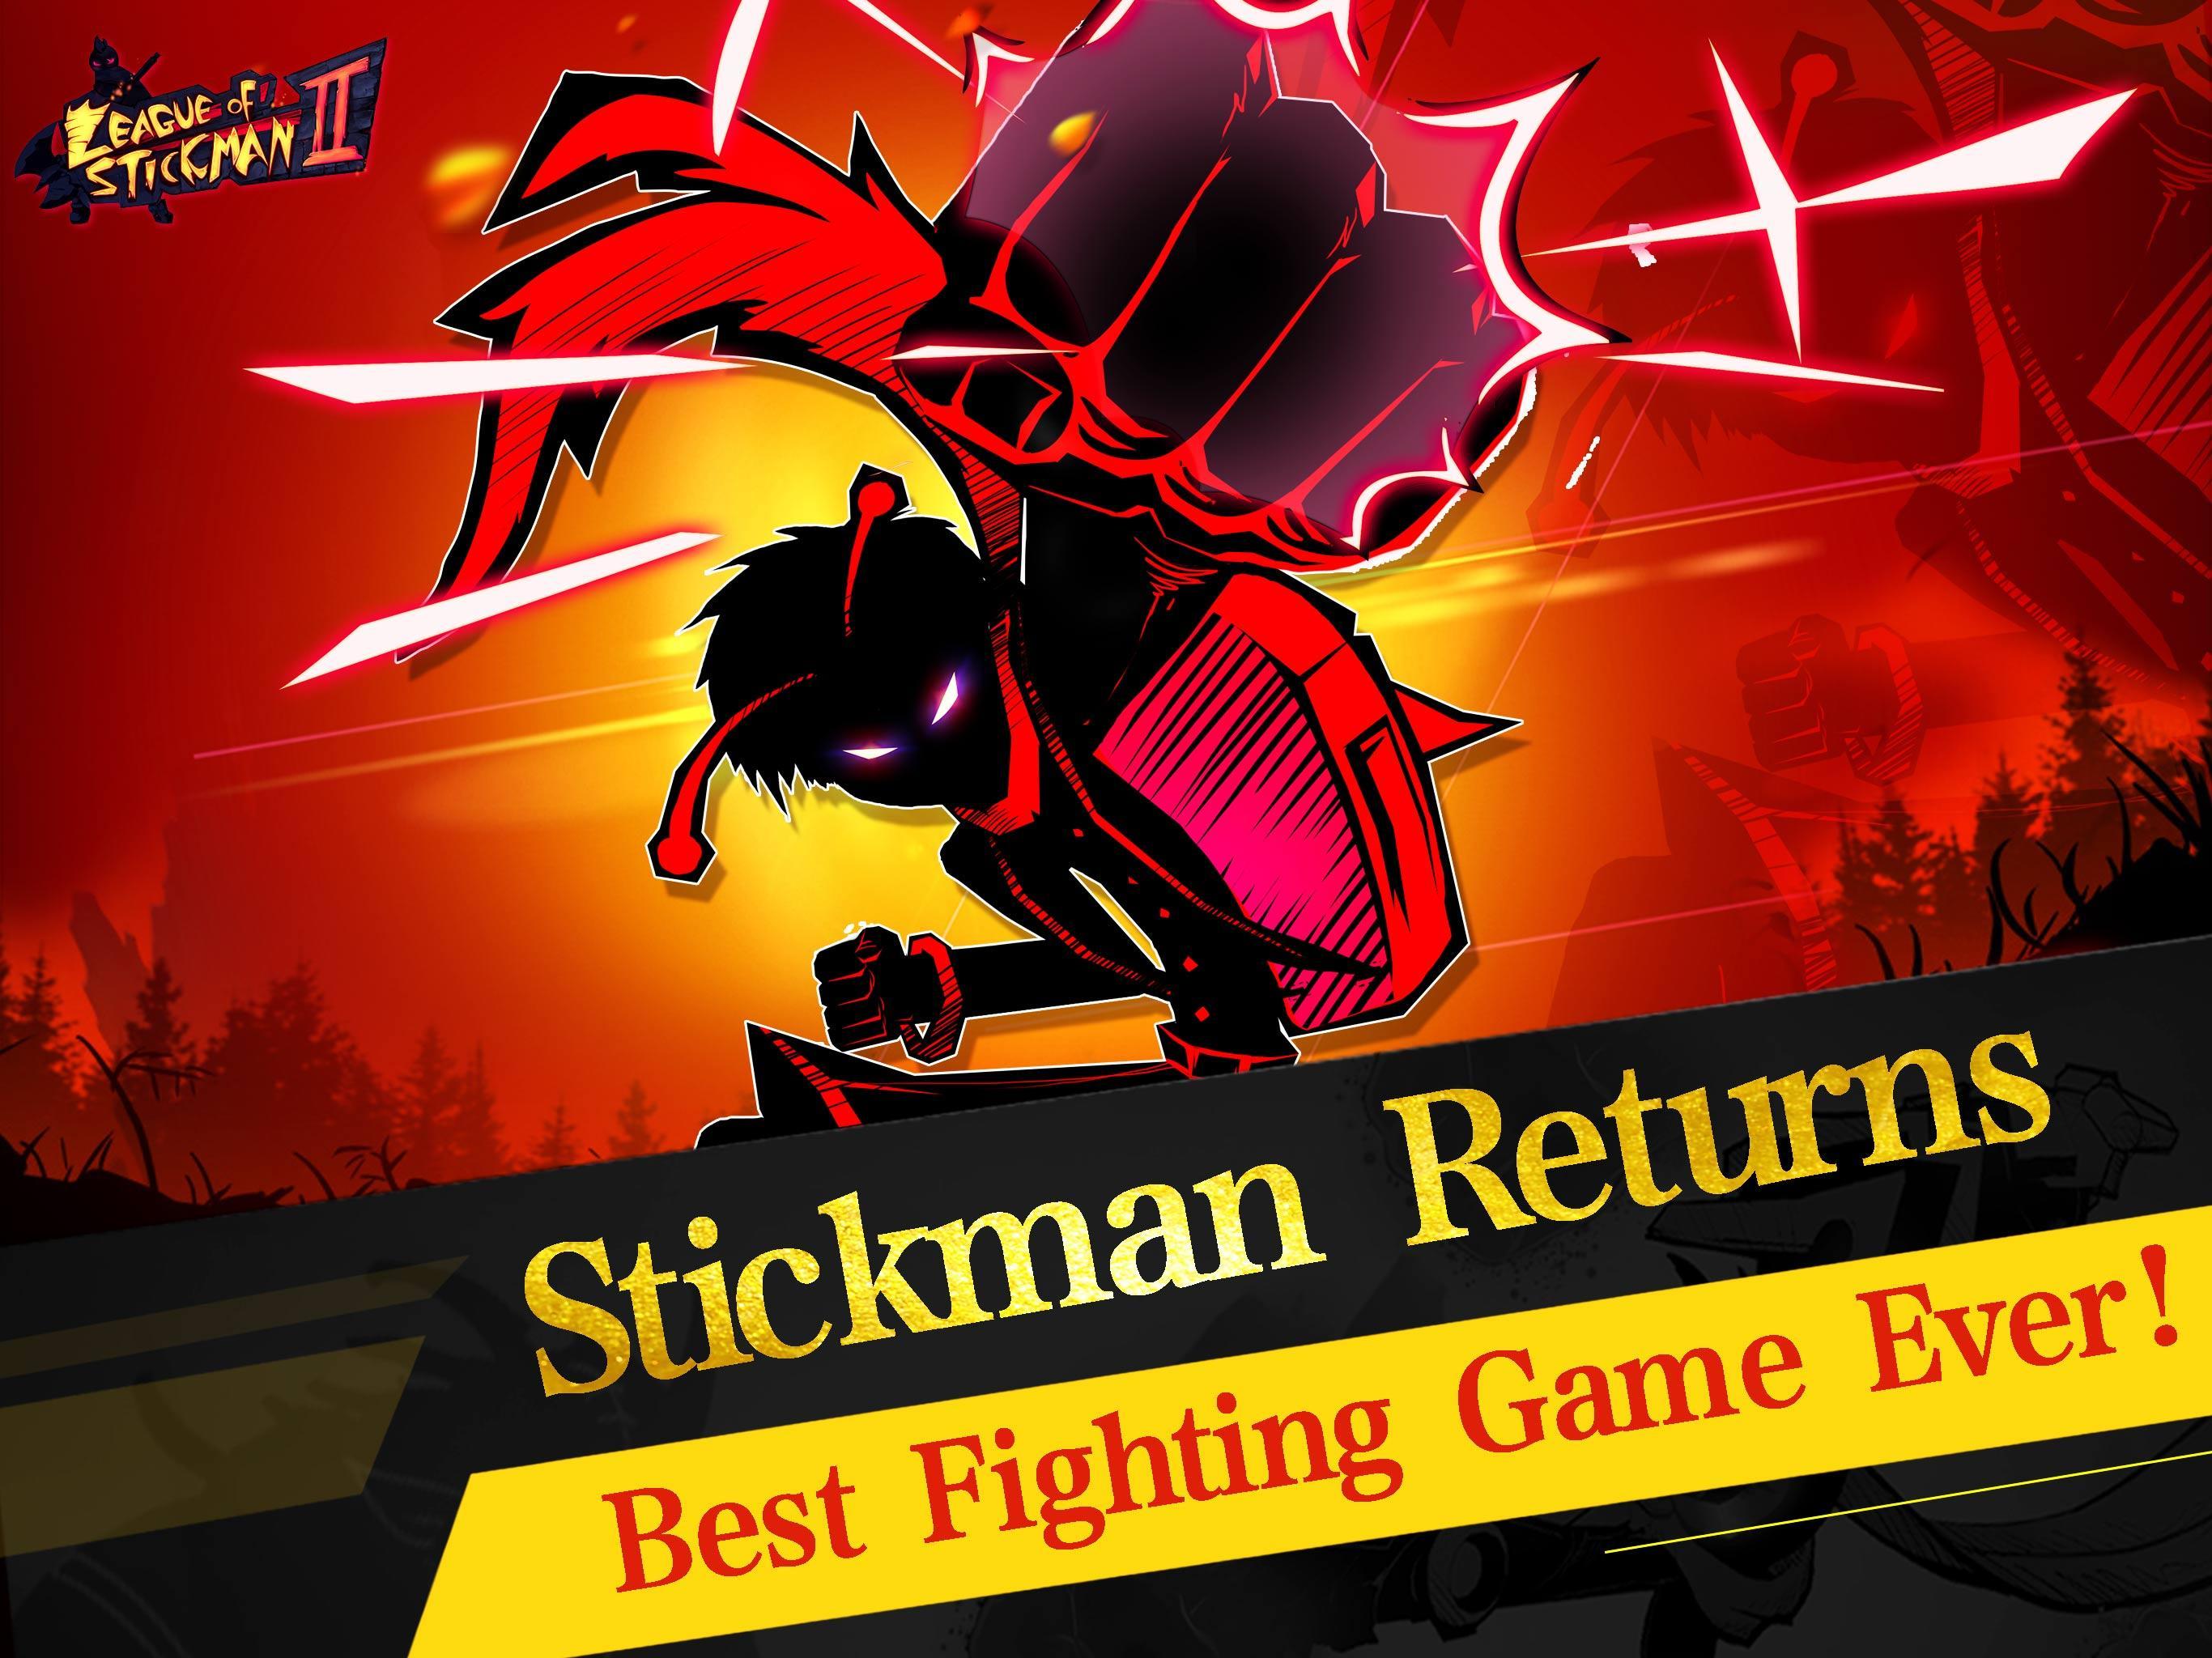 Screenshot of League of Stickman 2